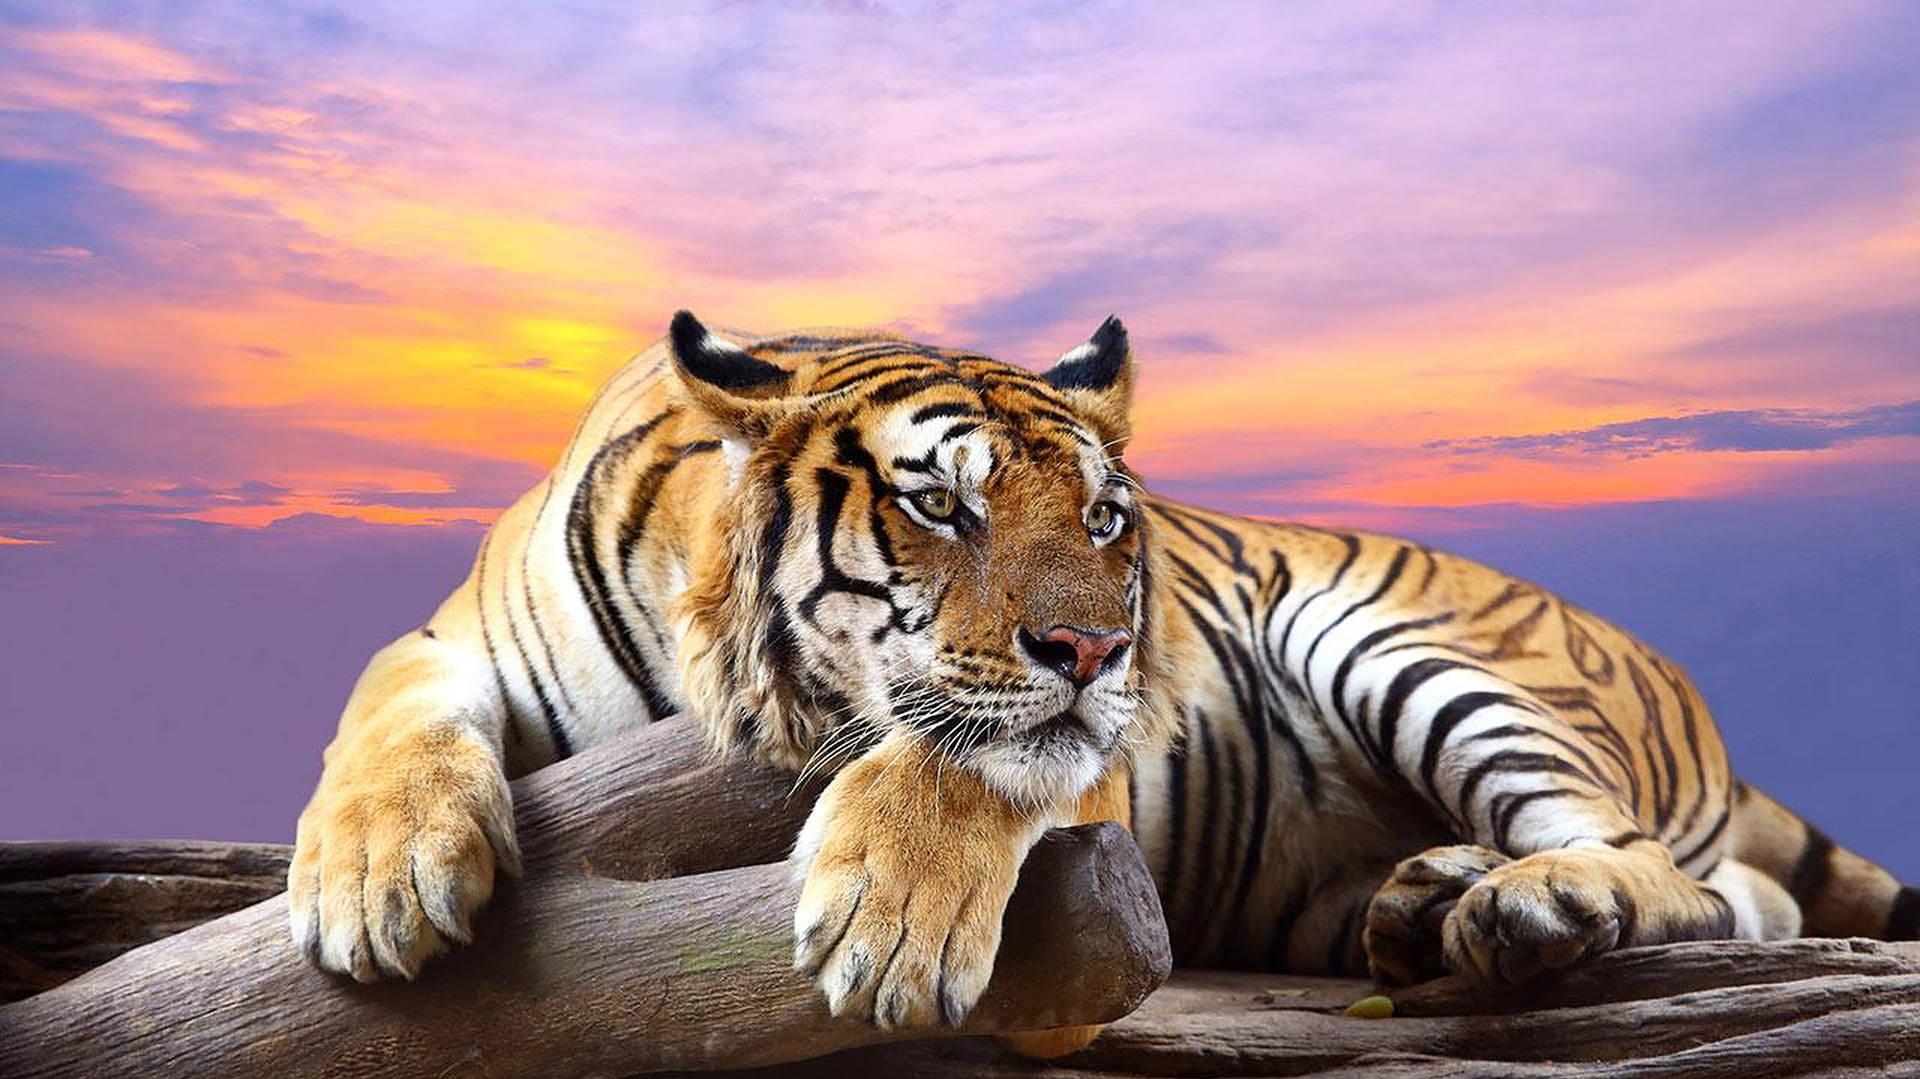 Download Wild Animal Tiger During Sunset Wallpaper